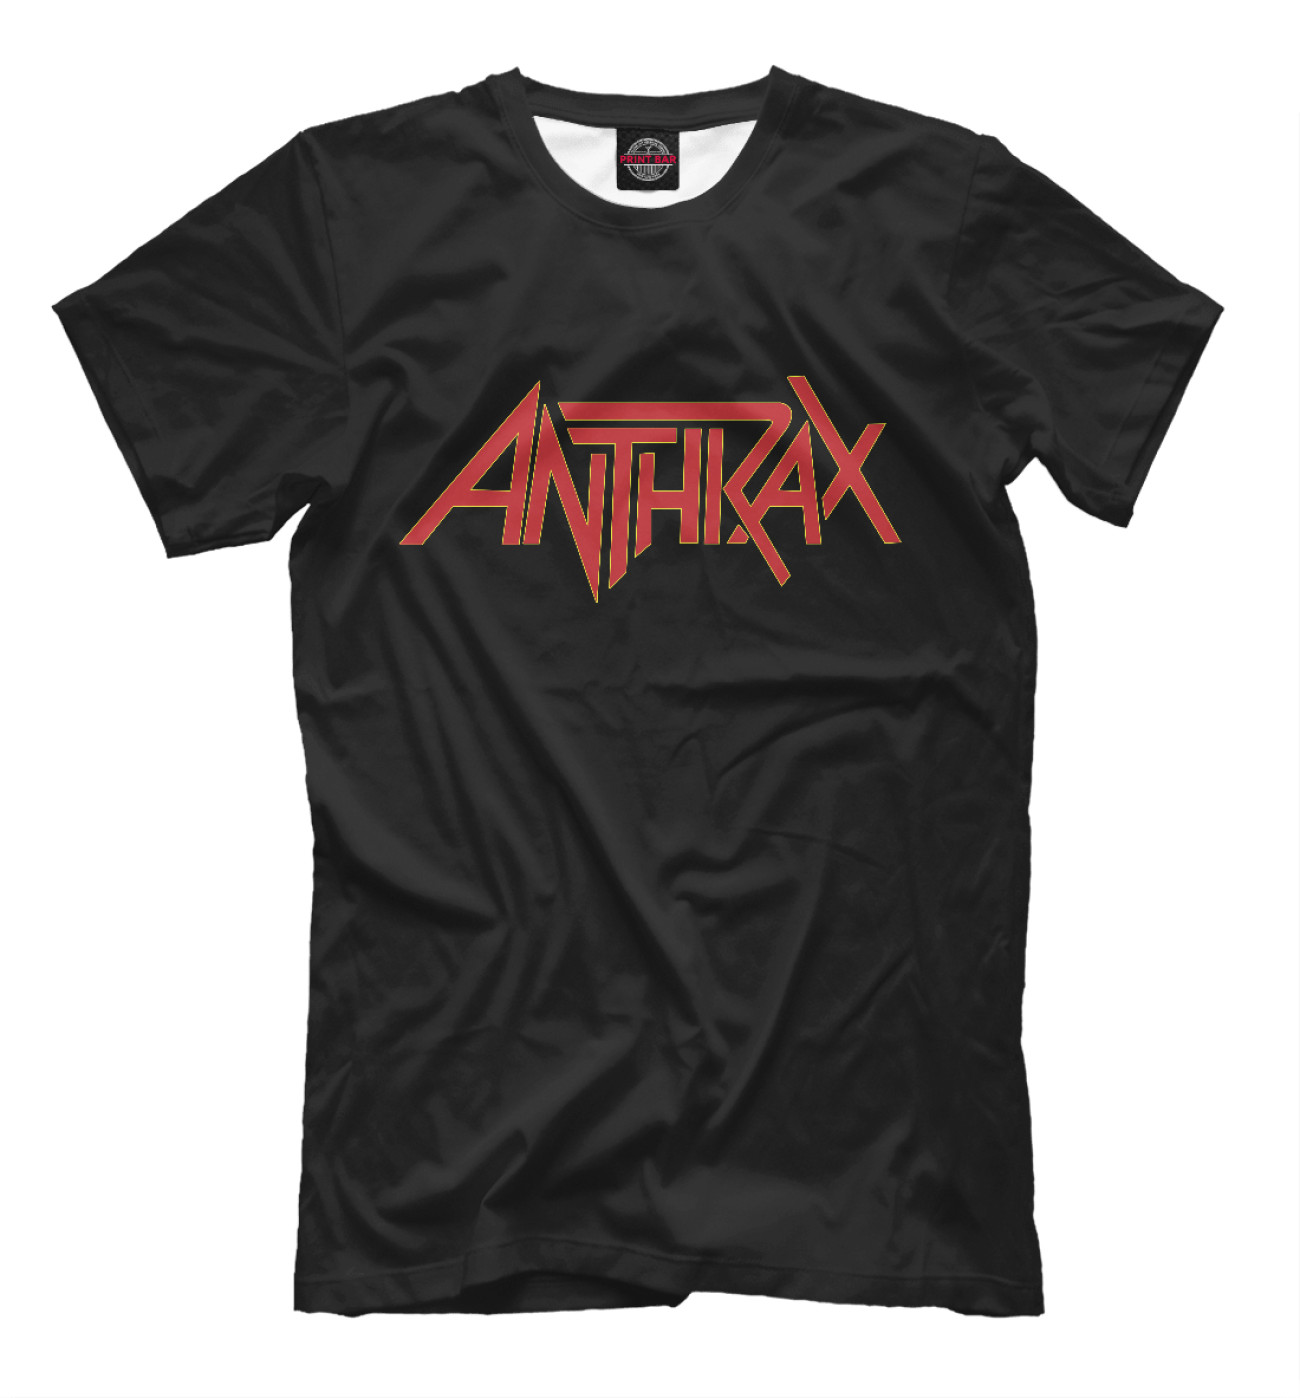 Мужская Футболка Anthrax, артикул: MZK-227695-fut-2